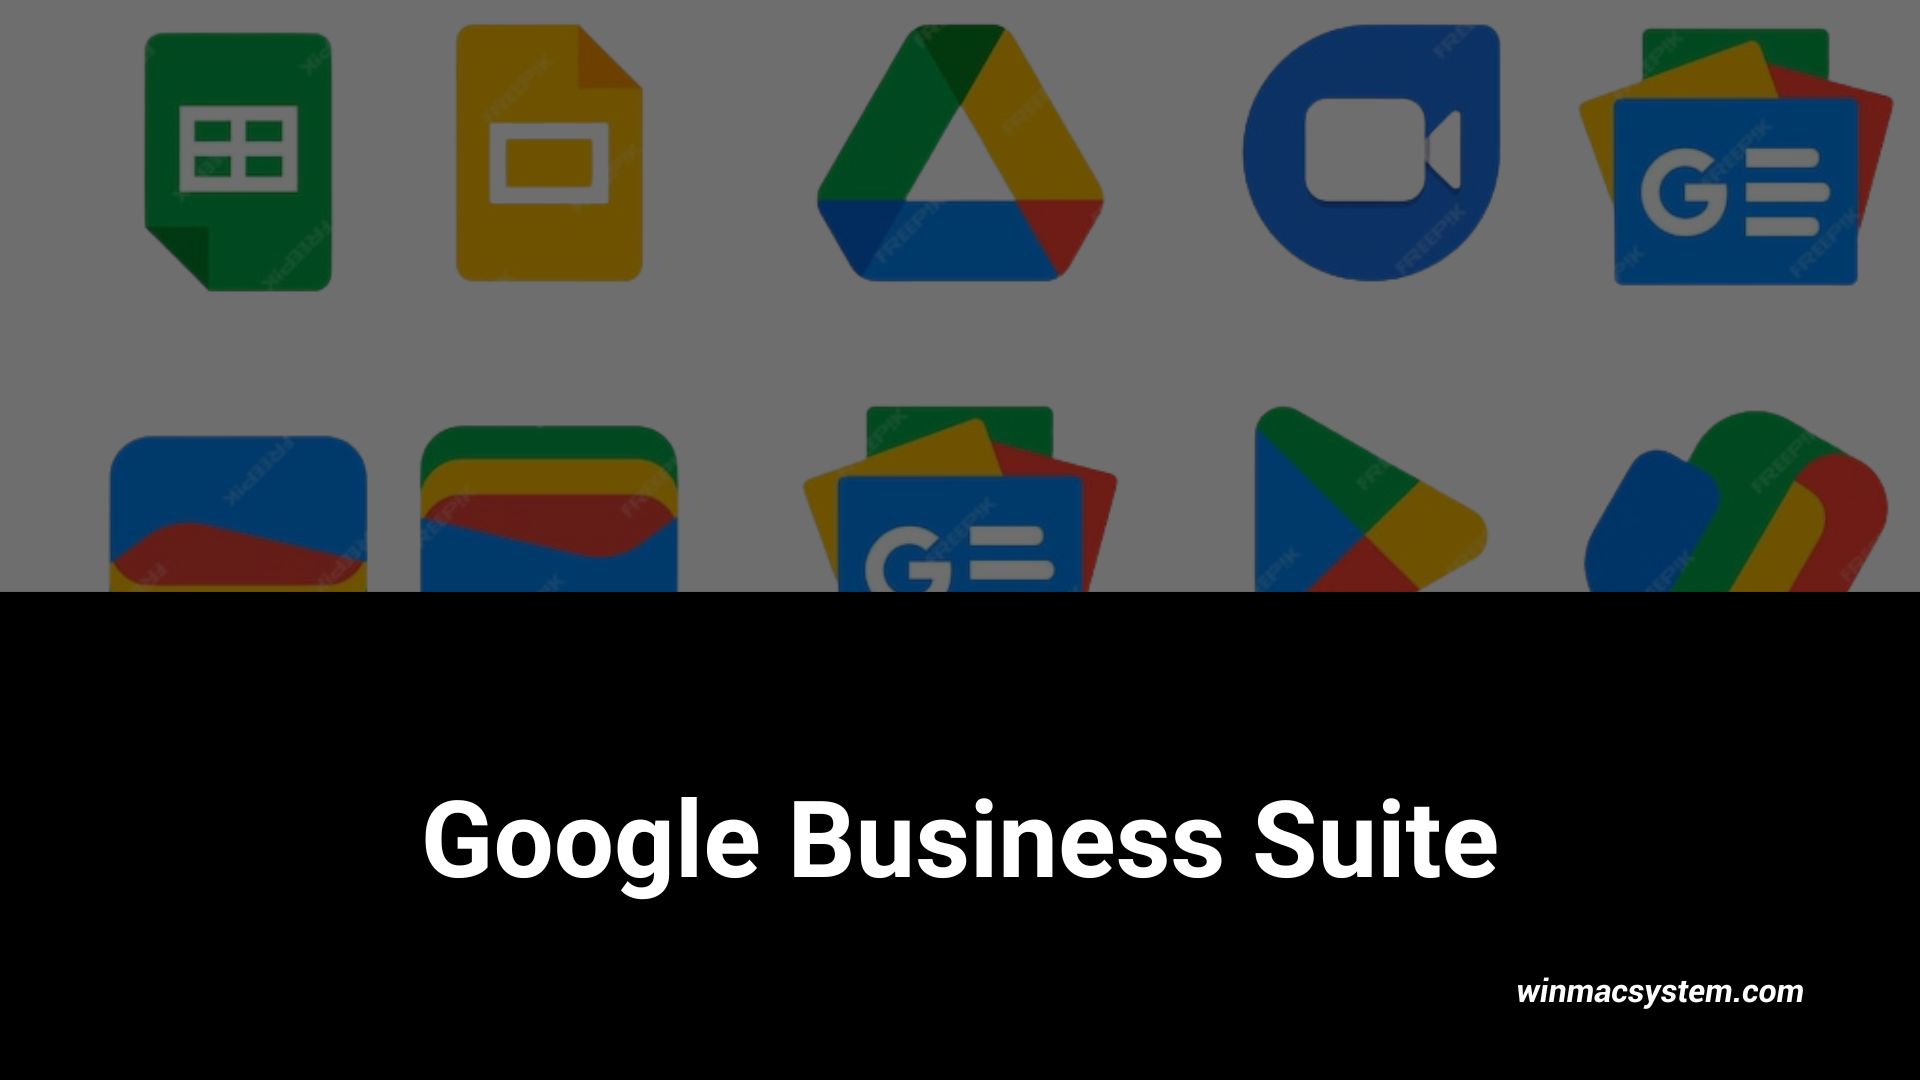 Google Business Suite